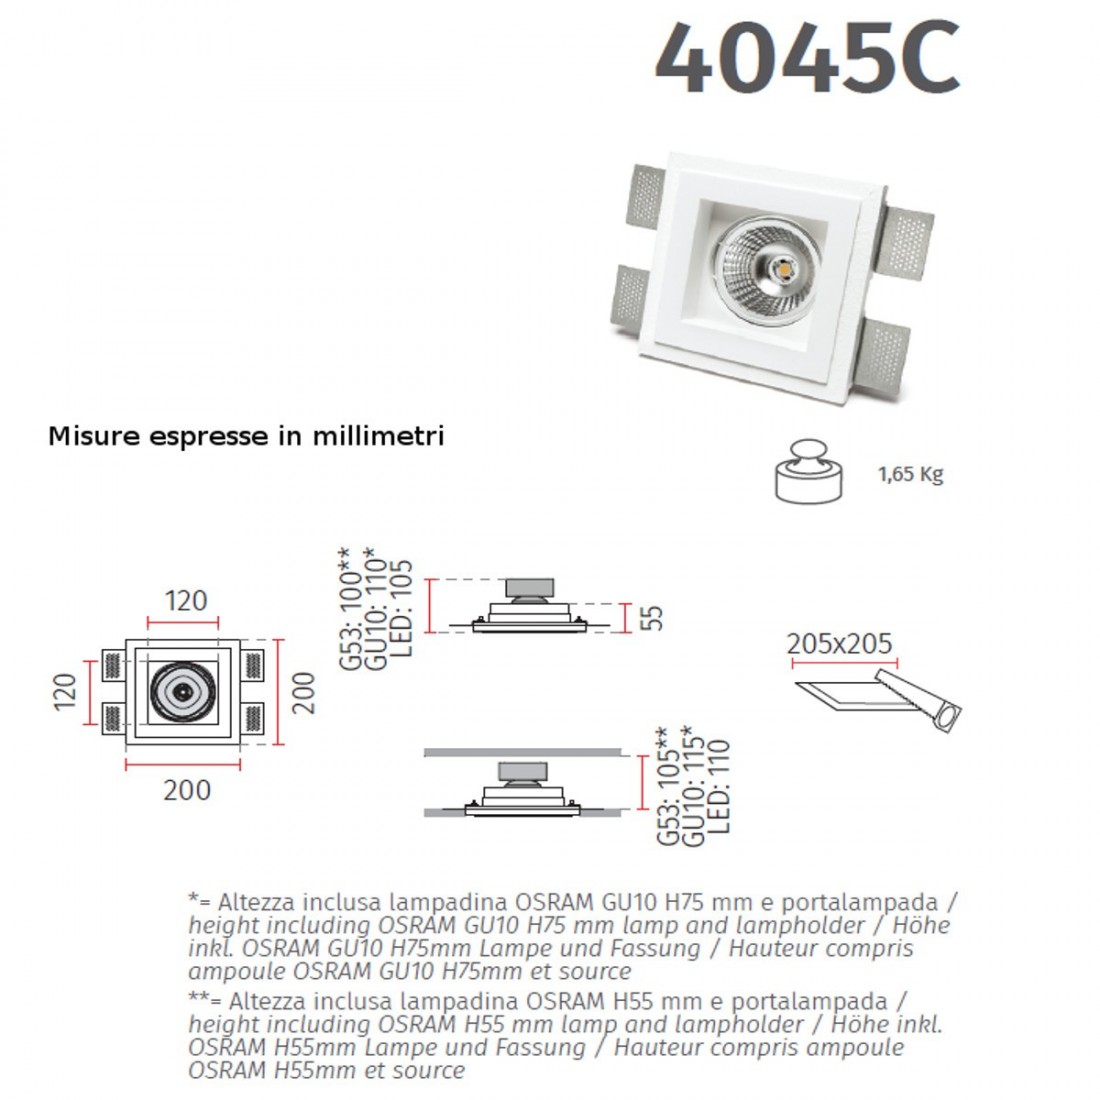 Faretto incasso BF-4045C 3008 LED 13W SISTEMA WIRELESS gesso bianco verniciabile vetro scomparsa cartongesso interno IP20